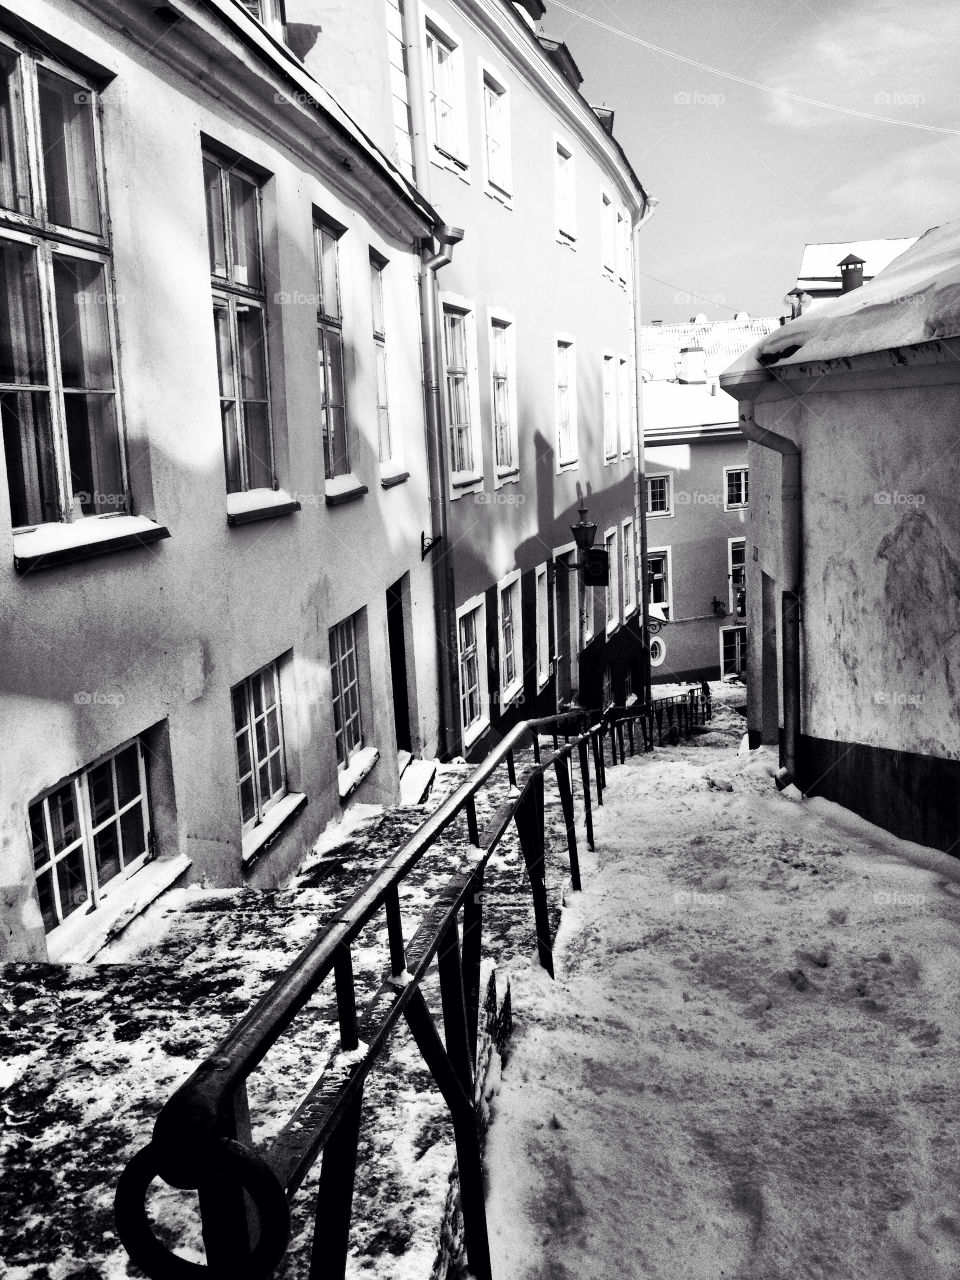 estonia snow tallinn white by rygod